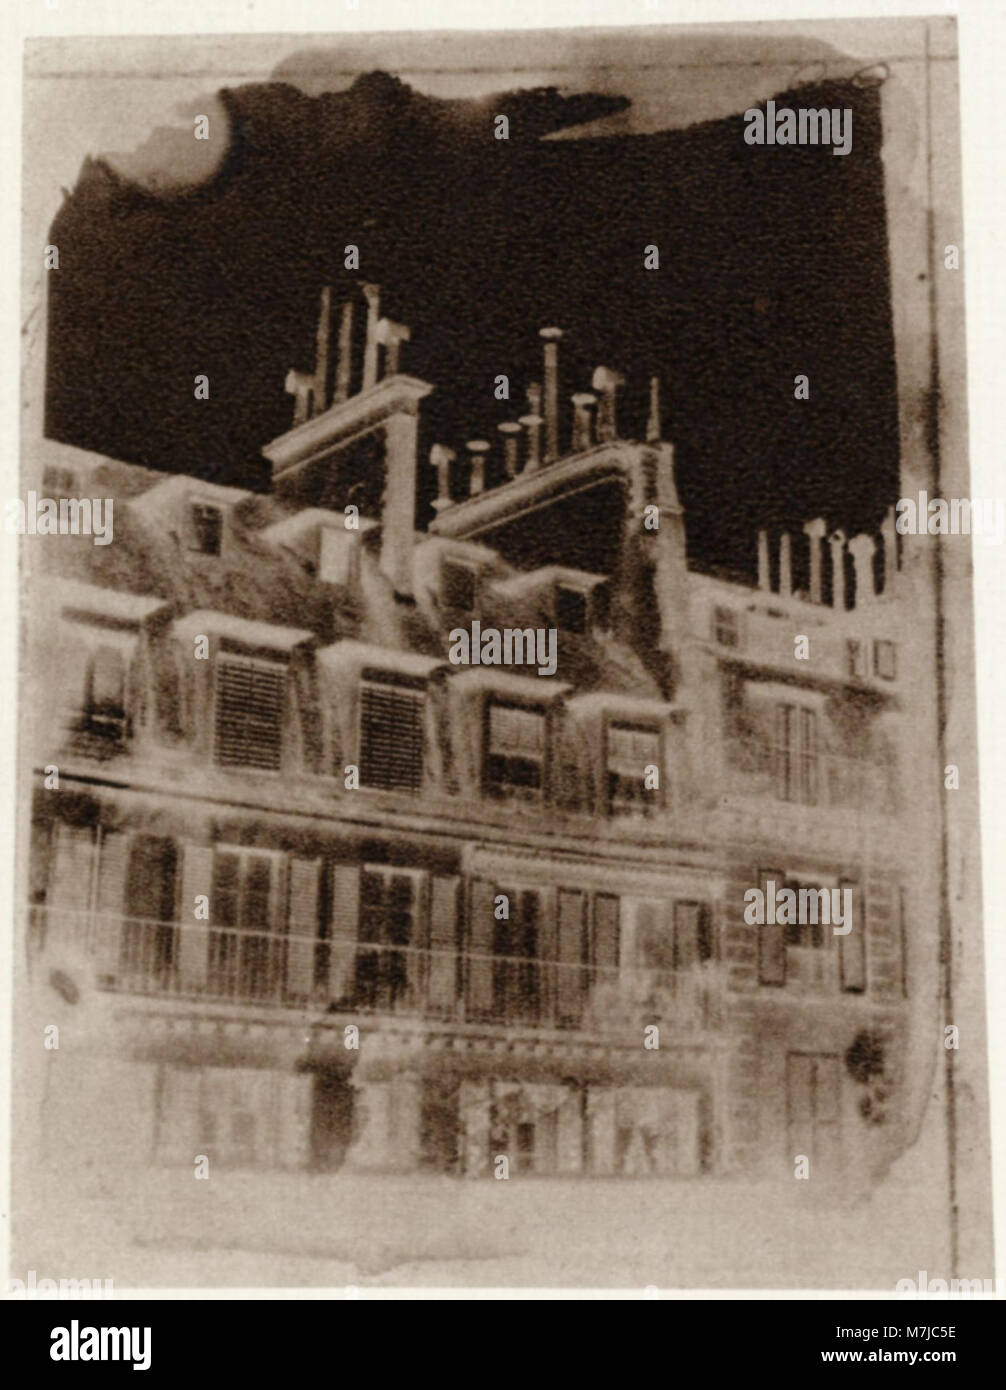 Talbot, William Henry Fox - Blick aus dem Fenster von Talbots Wohnung in der Rue de la Paix, Paris (1) (Zeno Fotografie) Stock Photo